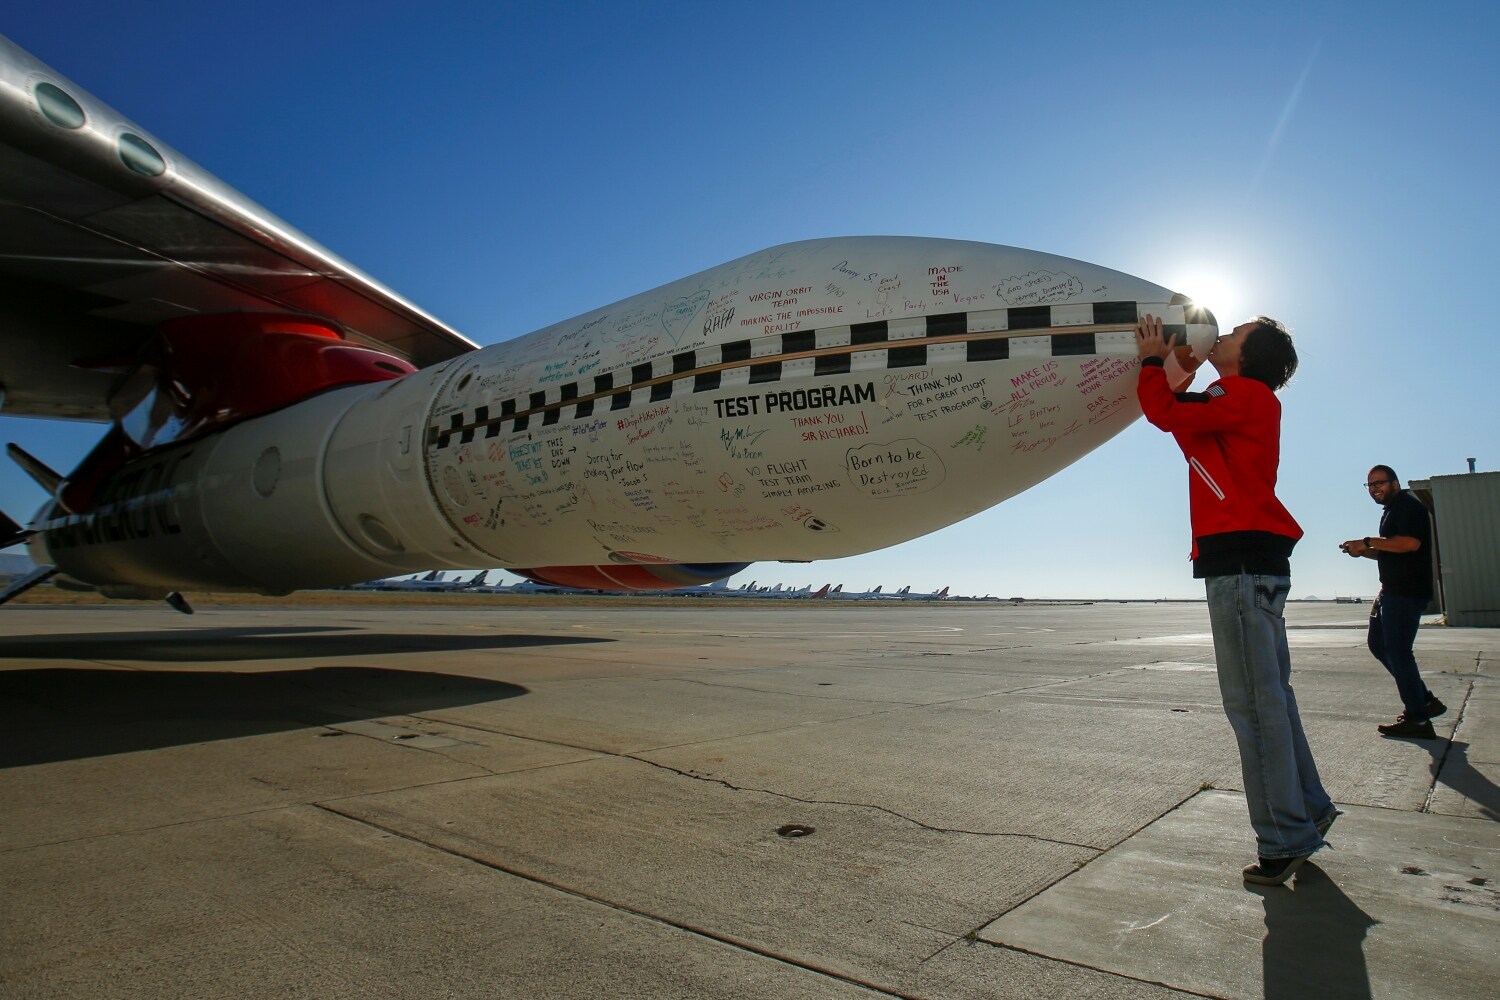 El ingeniero jefe de Virgin Orbit, Kevin Sagis, besa la punta de un cohete de prueba debajo del ala de un avión de pasajeros Boeing 747 modificado antes de su prueba de despegue de su sistema de lanzamiento a gran altitud para satélites desde Mojave, California, Estados Unidos.